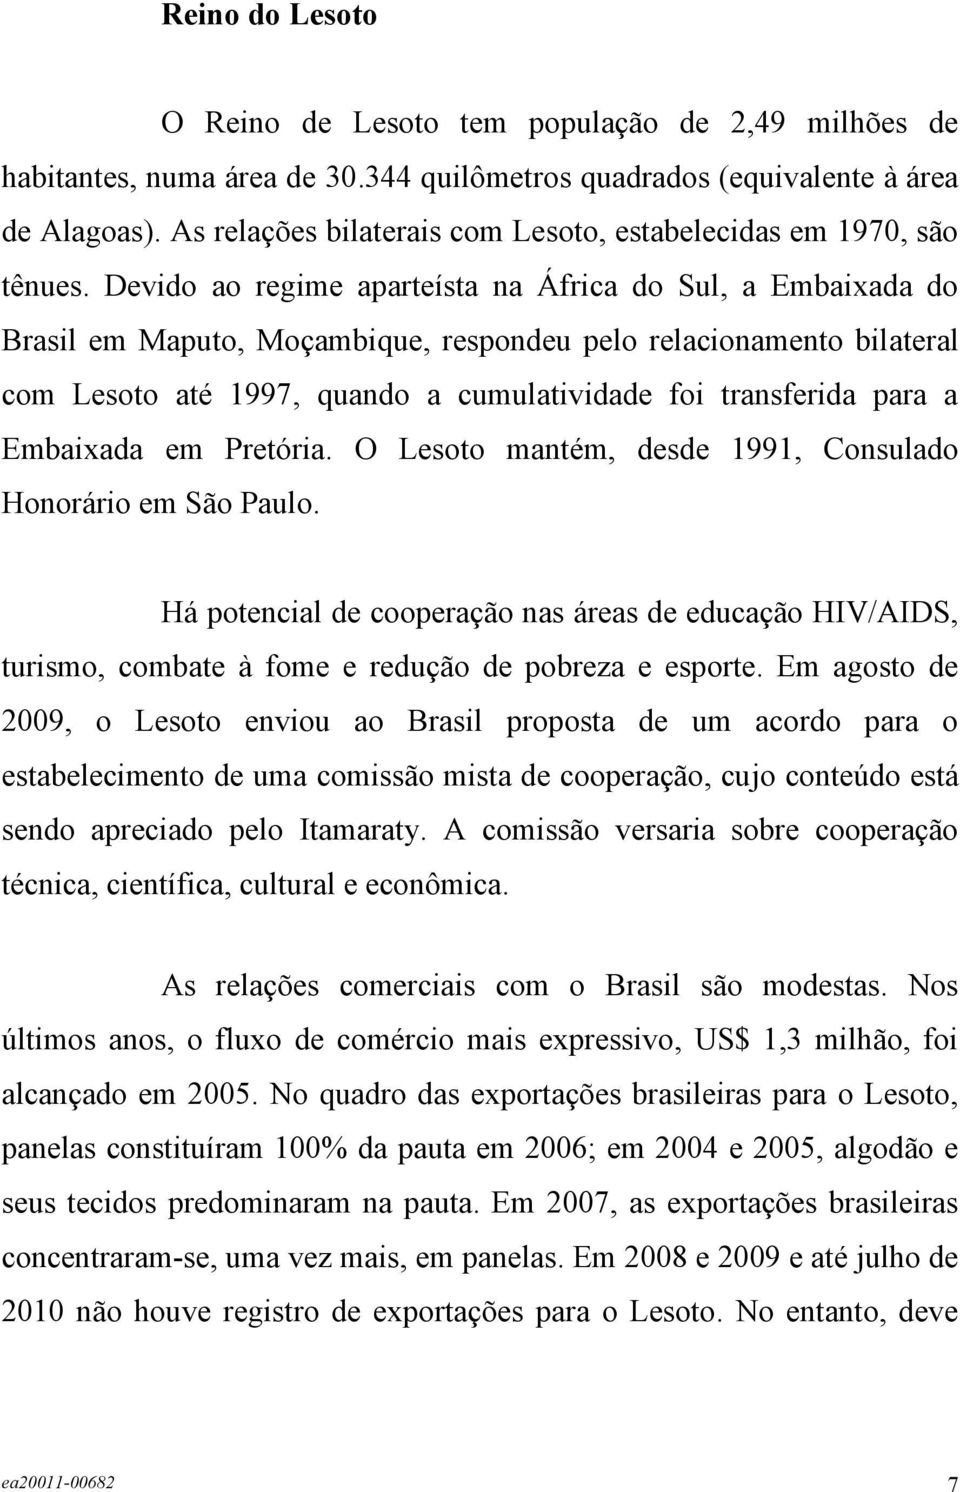 Devido ao regime aparteísta na África do Sul, a Embaixada do Brasil em Maputo, Moçambique, respondeu pelo relacionamento bilateral com Lesoto até 1997, quando a cumulatividade foi transferida para a